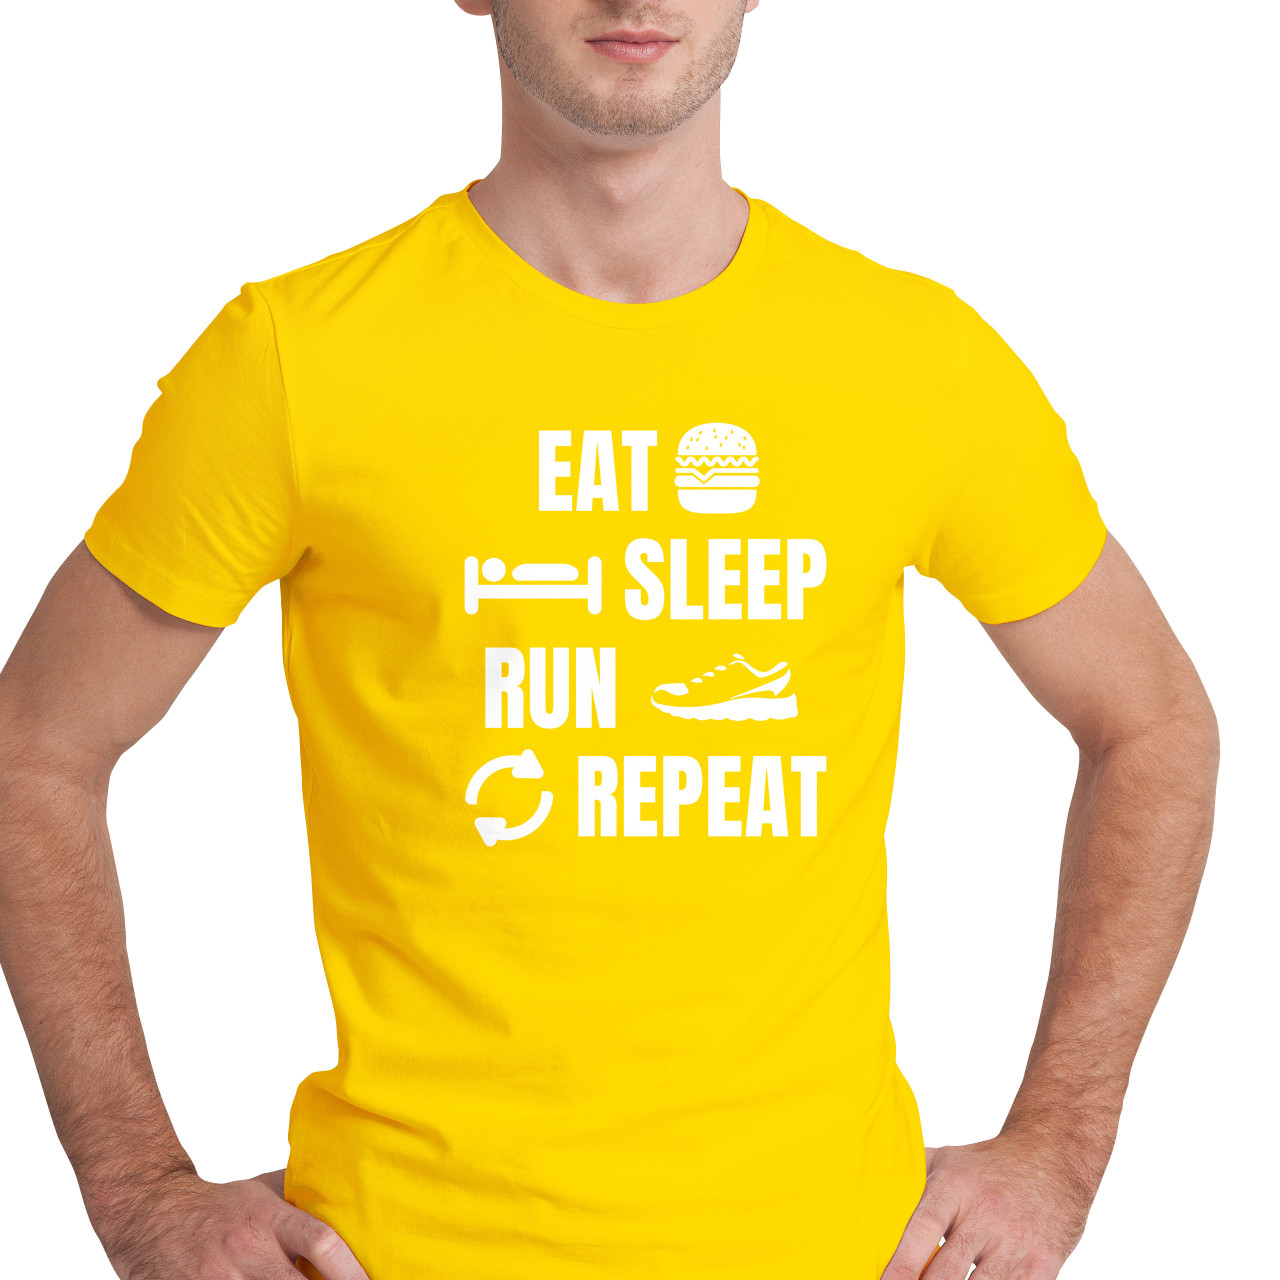 Pánské tričko s potiskem "Eat, sleep, Run"